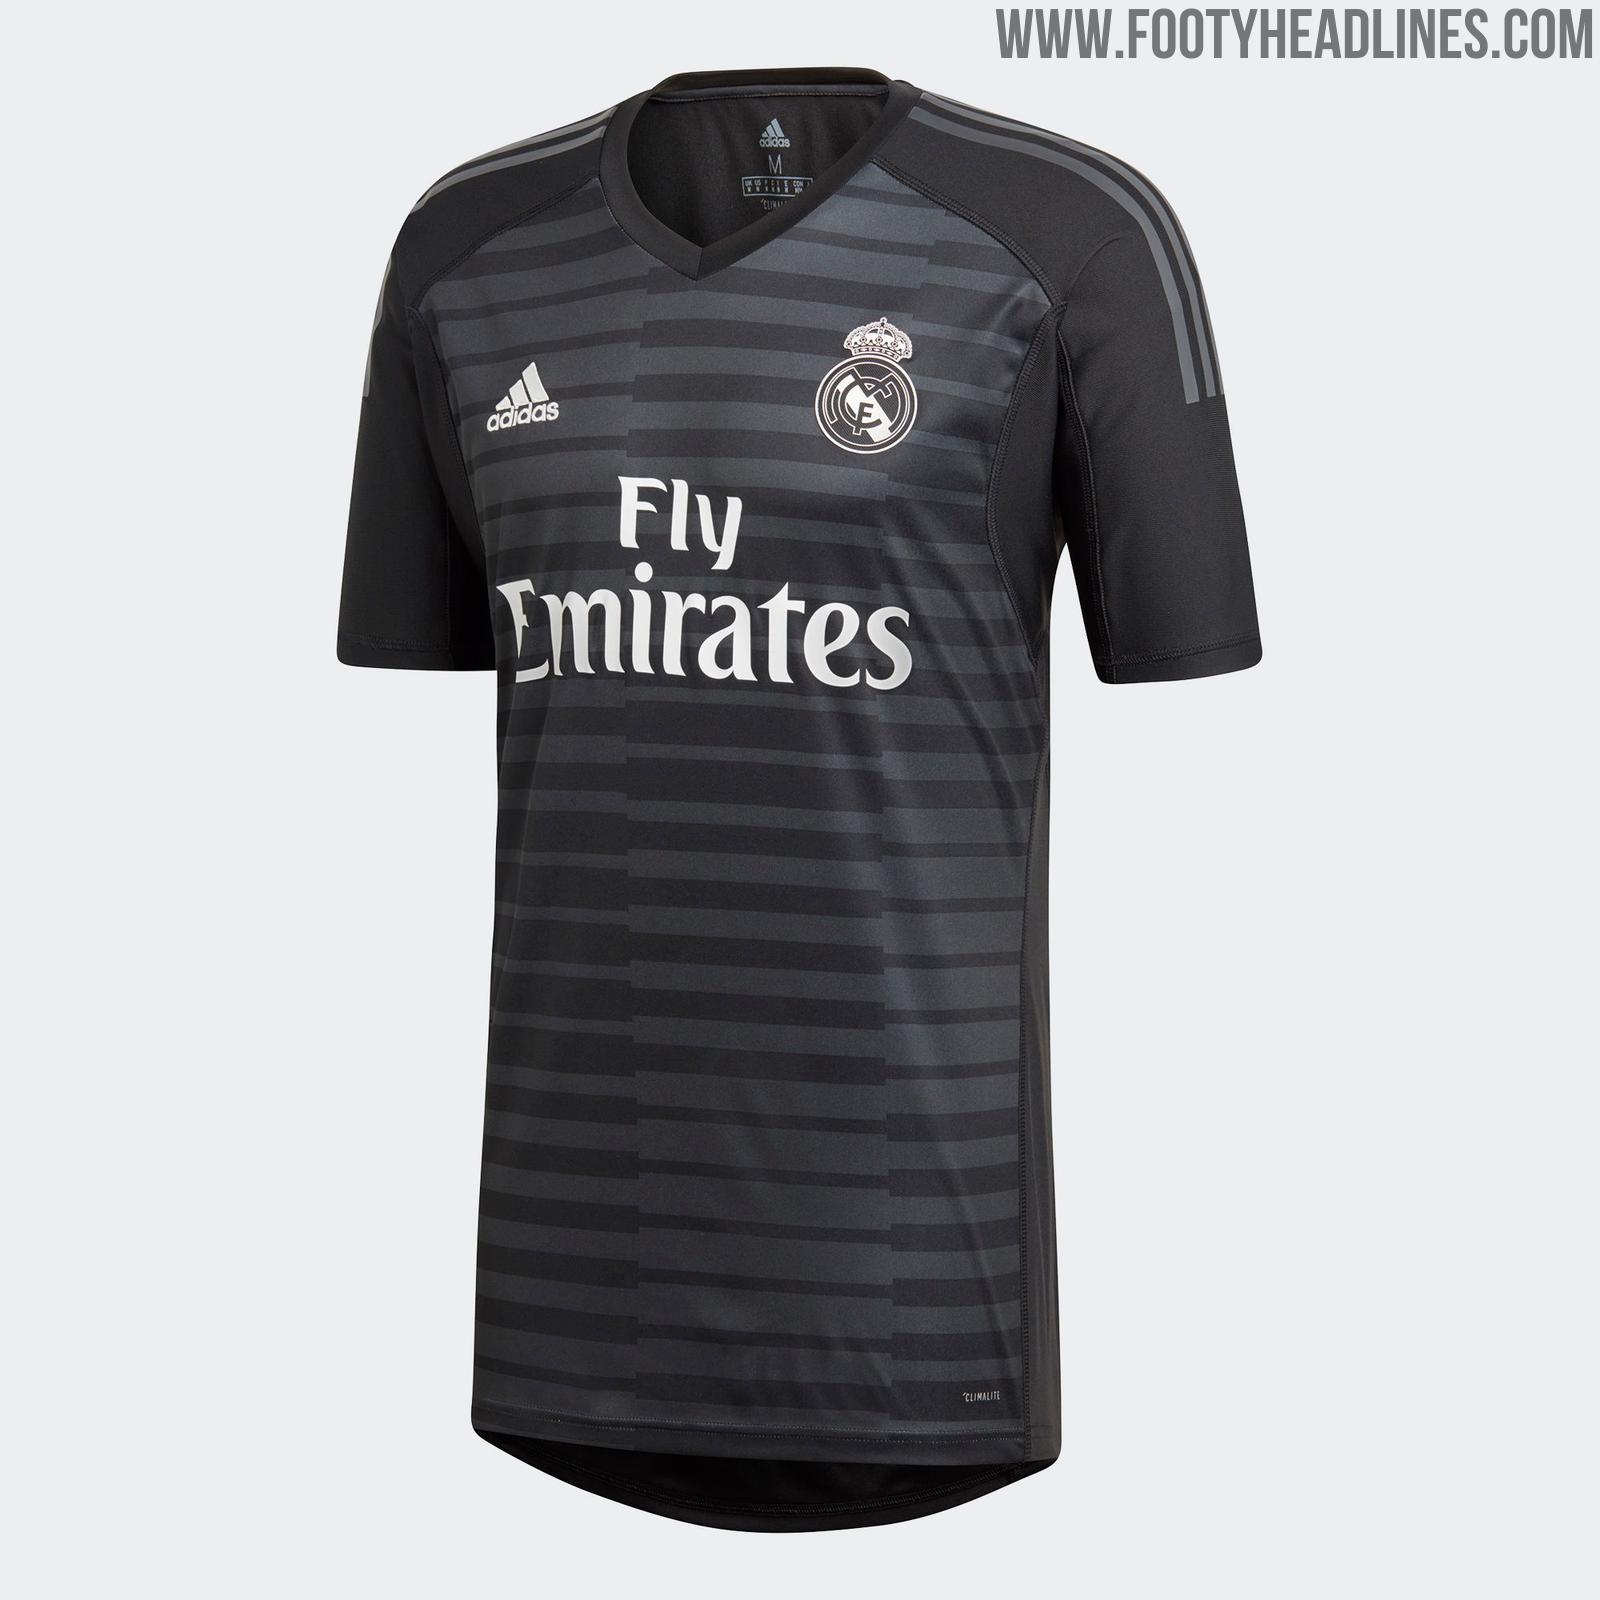 rehén Cordelia dinastía Real Madrid 18-19 Goalkeeper Home & Away Kits Released - Footy Headlines